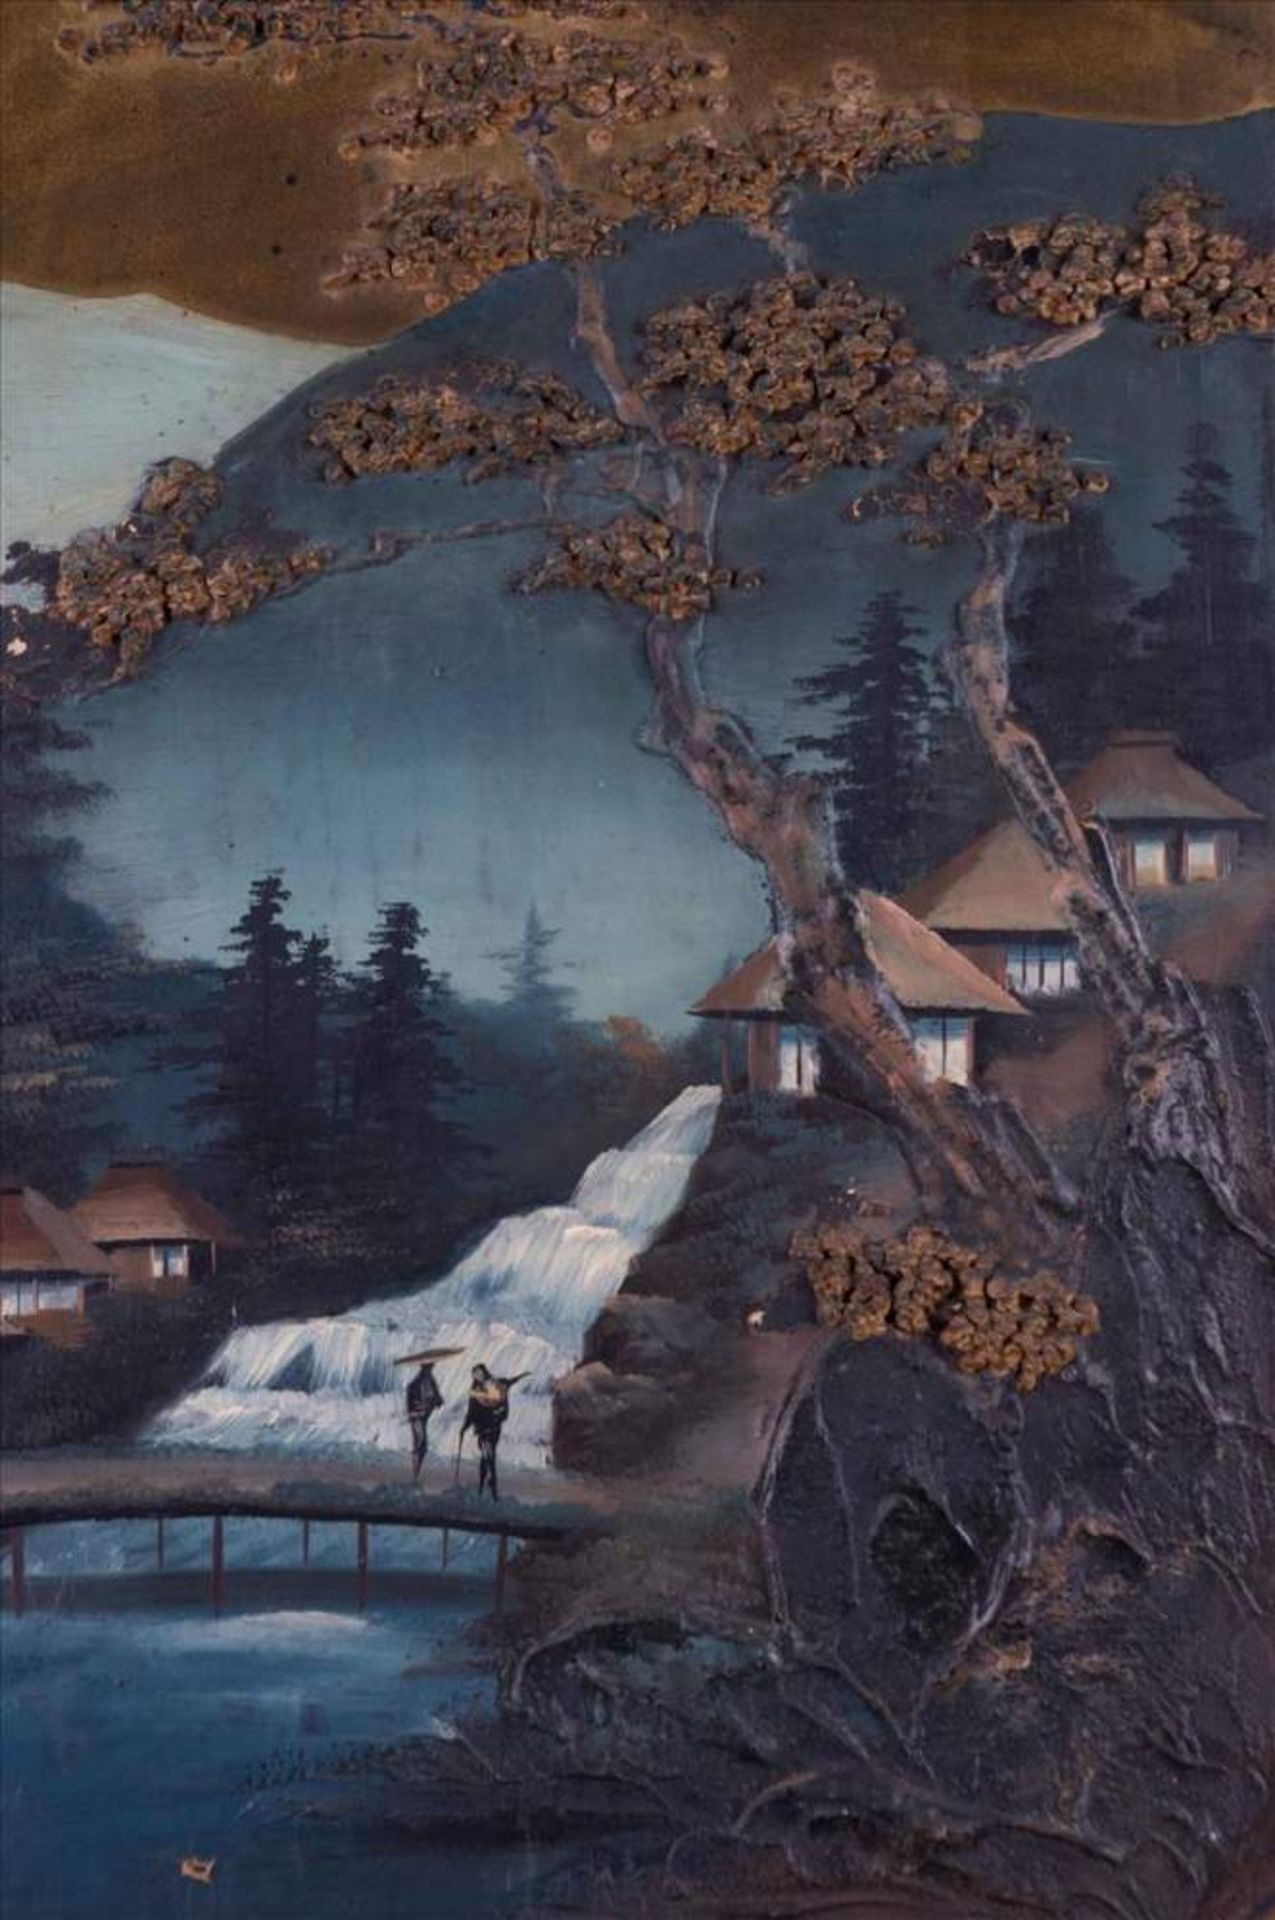 Lackmalerei China um 1900 / Varnish painting, China about 1900 im Spiegel Landschaftsszene mit - Bild 6 aus 6